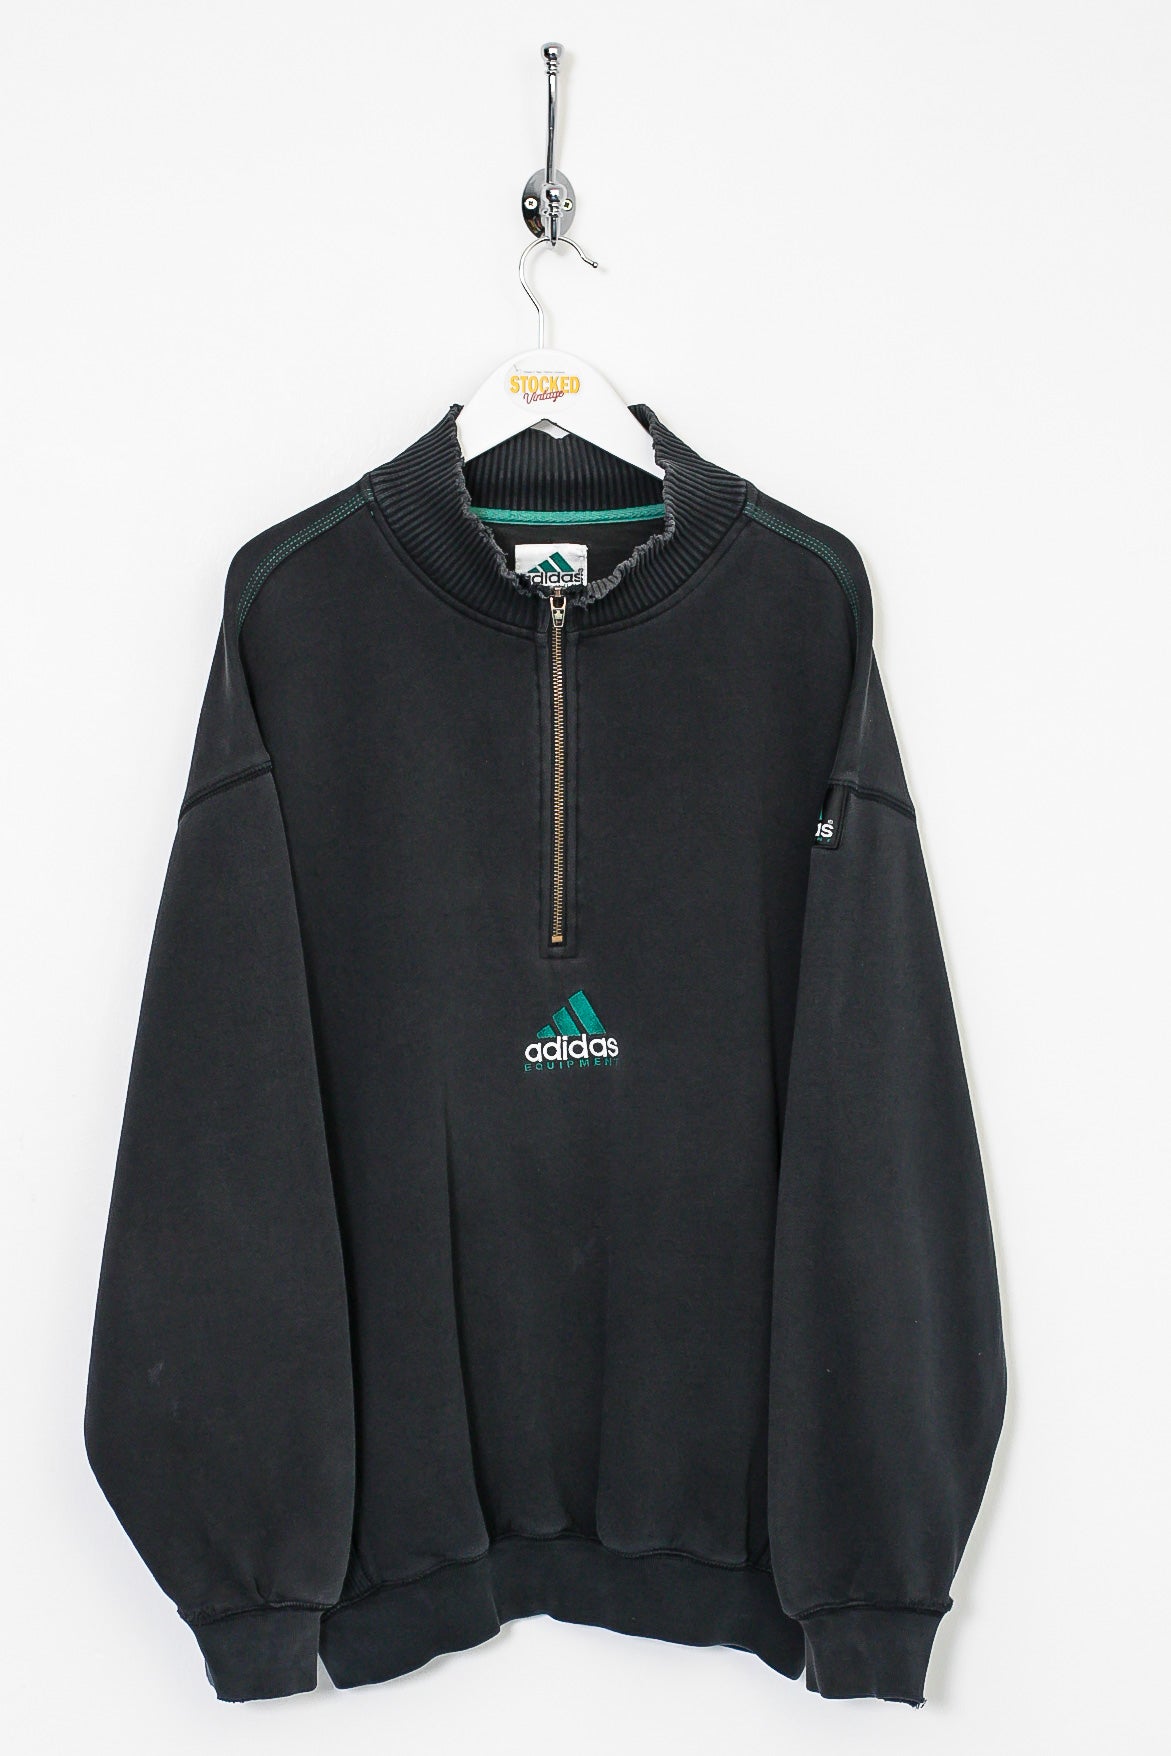 90s Adidas Equipment 1/4 Zip Sweatshirt (XL)